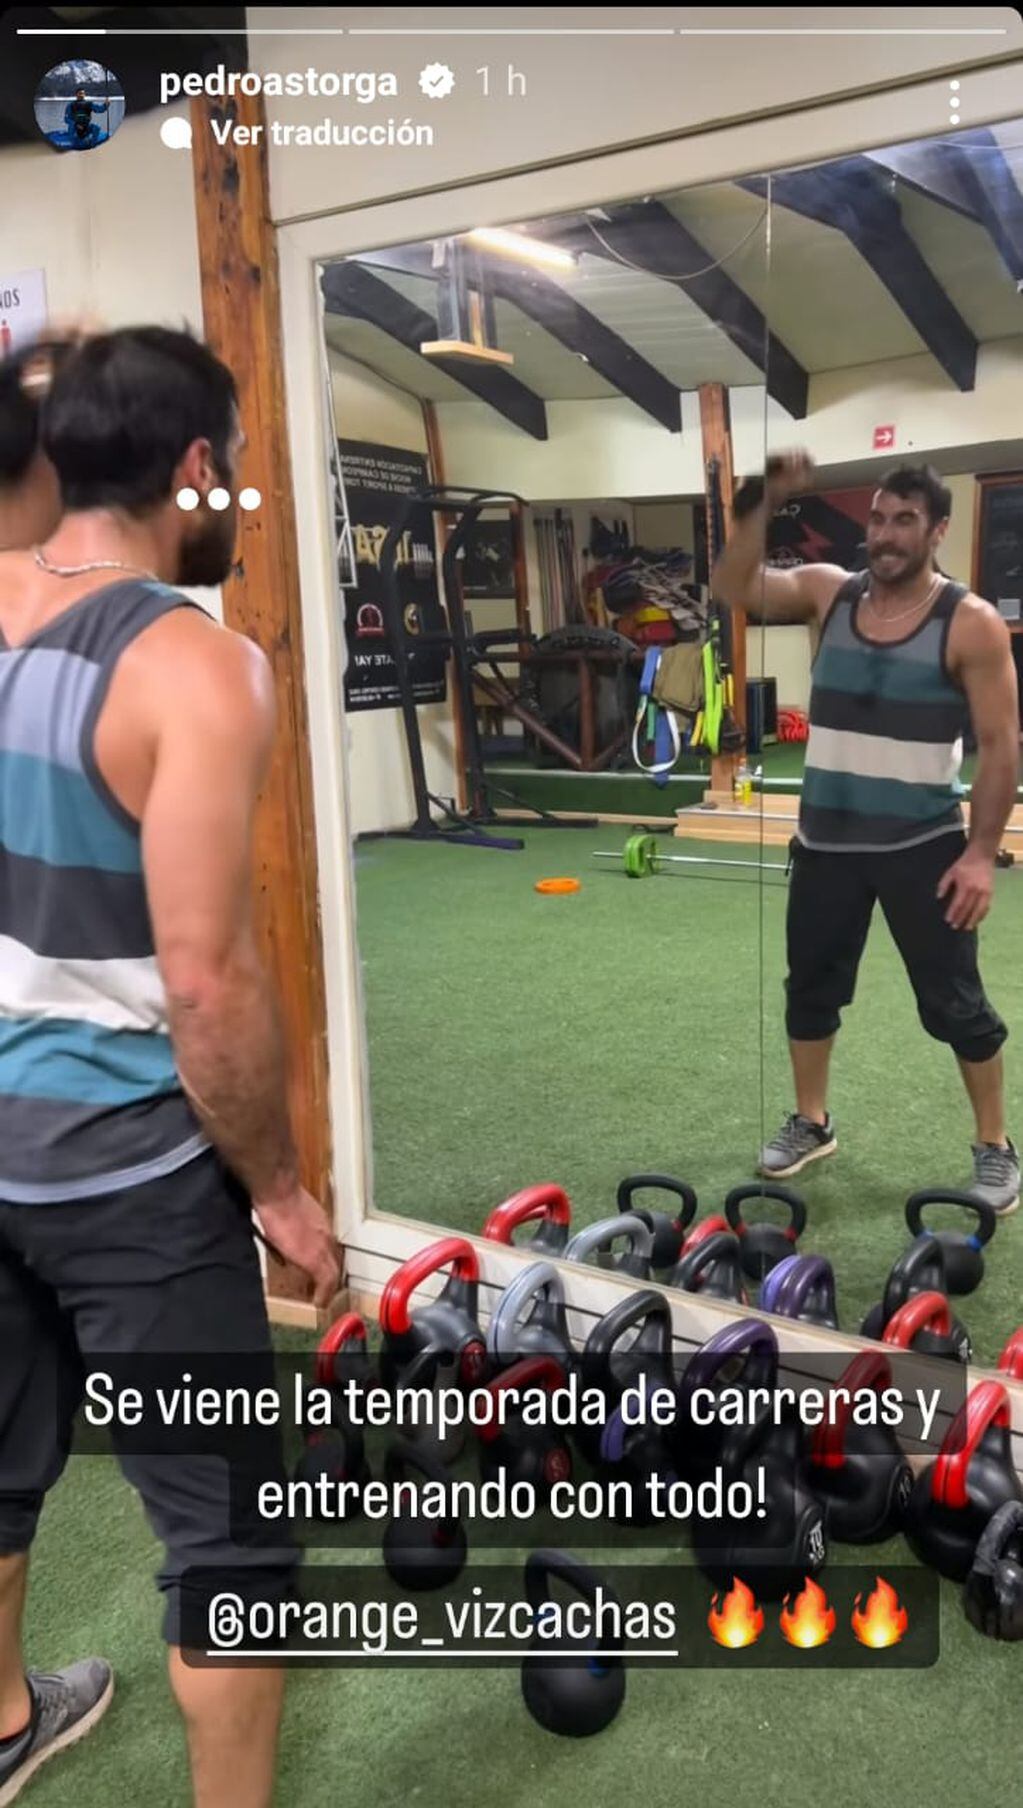 Pedro Astorga realizando una exigente rutina de ejercicios.